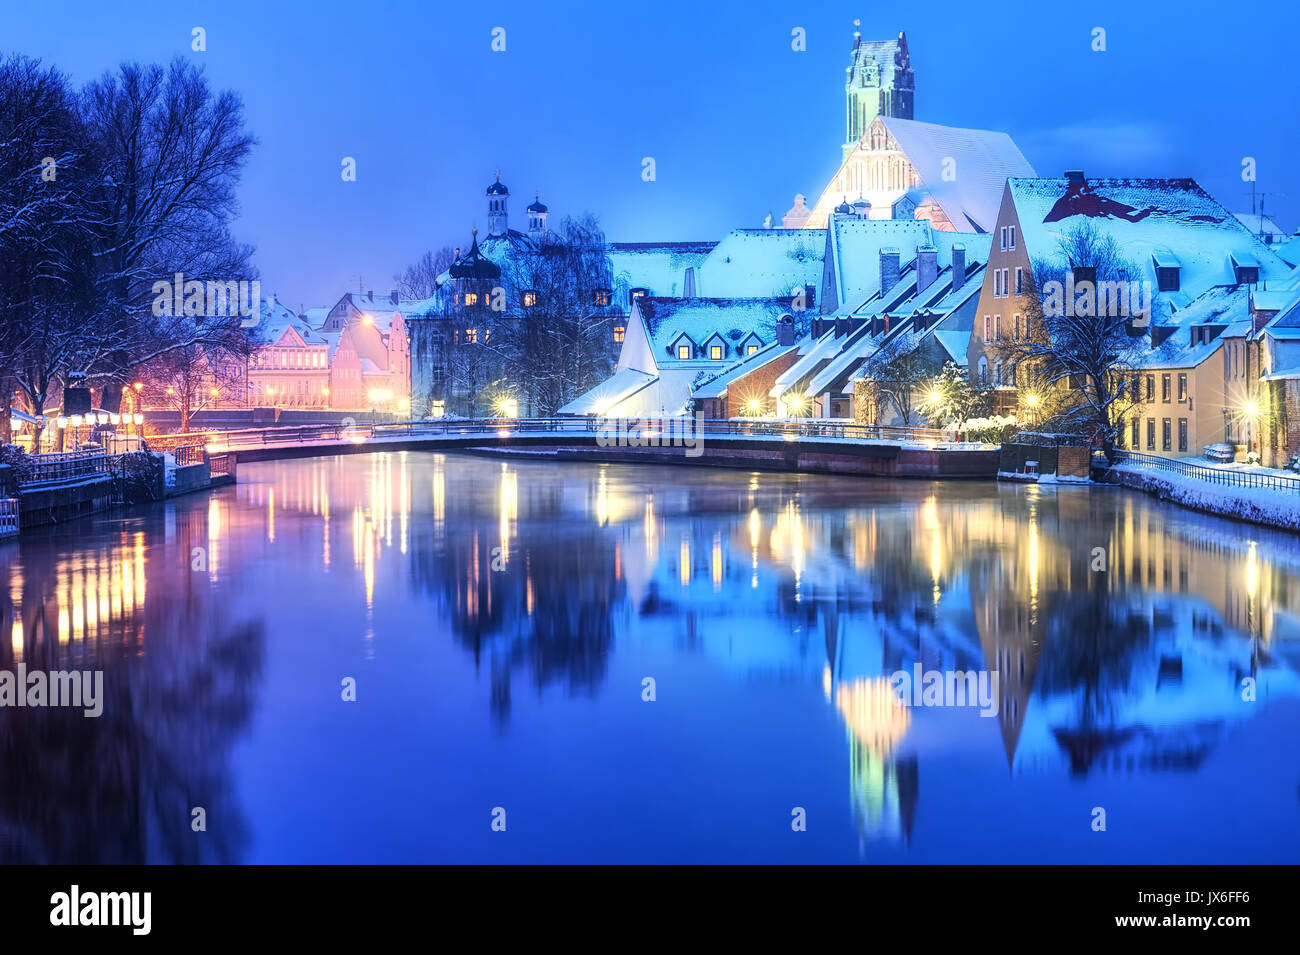 Weihnachten Winter Abend in Landshut, deutschen Stadt nahe München, Deutschland Stockfoto